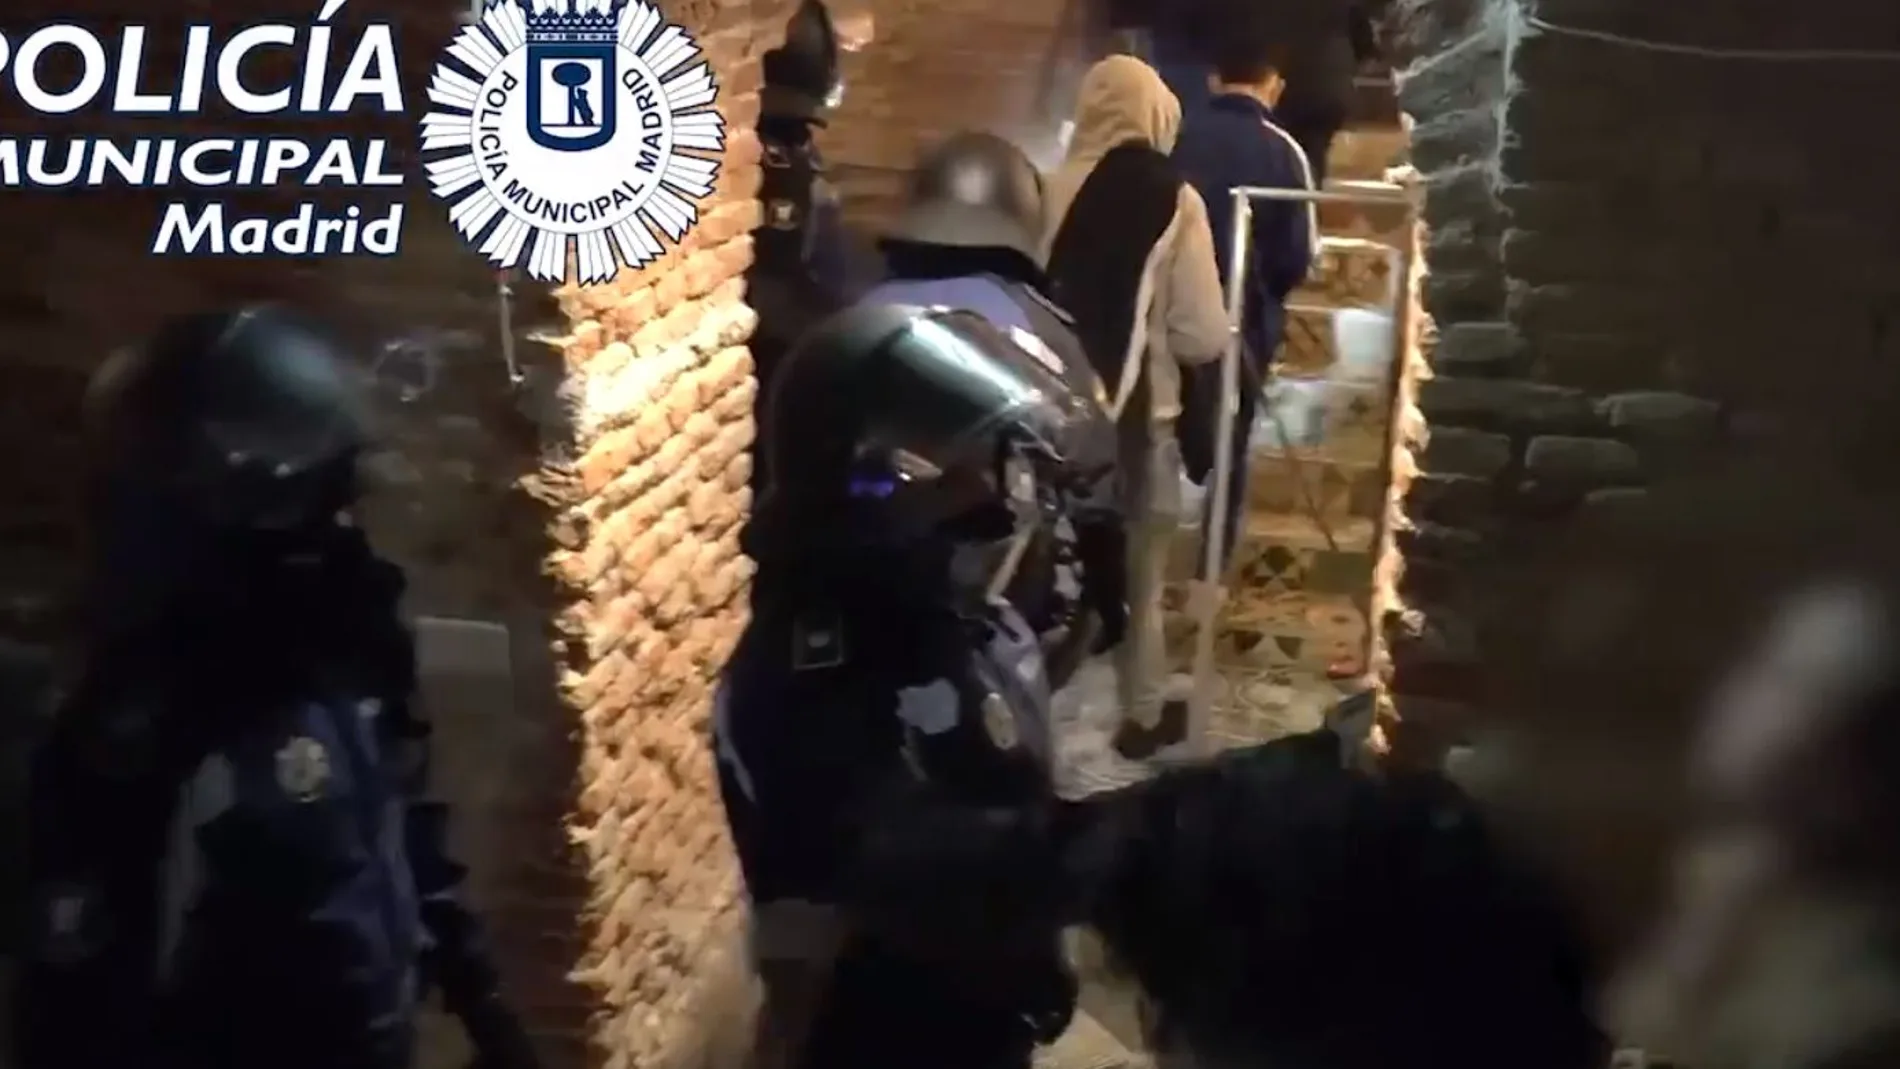 La Policía interviene una fiesta ilegal en Madrid